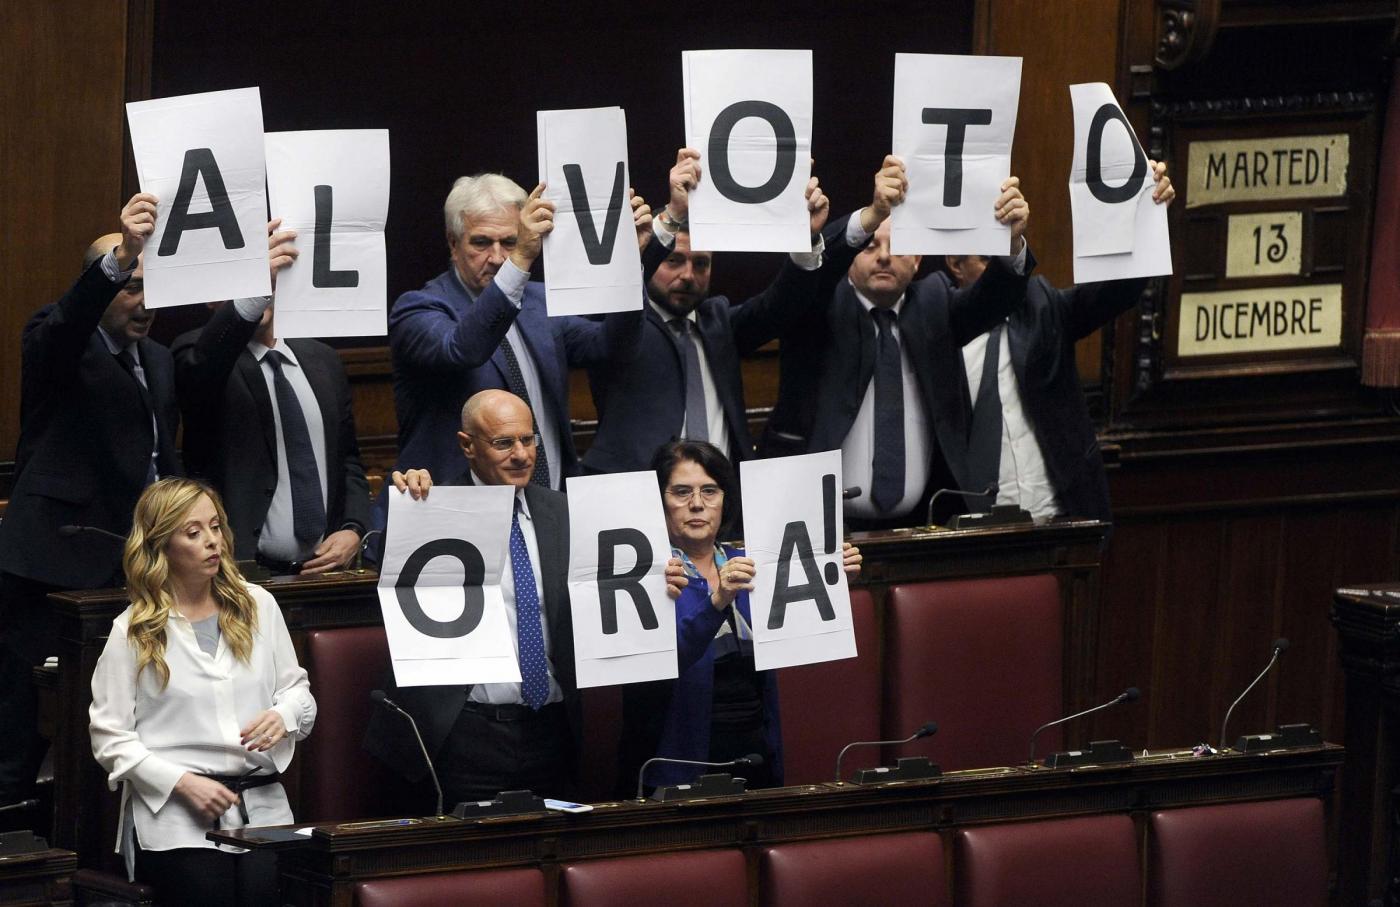 Mattarellum, favorevoli e contrari alla legge elettorale proposta da Matteo Renzi